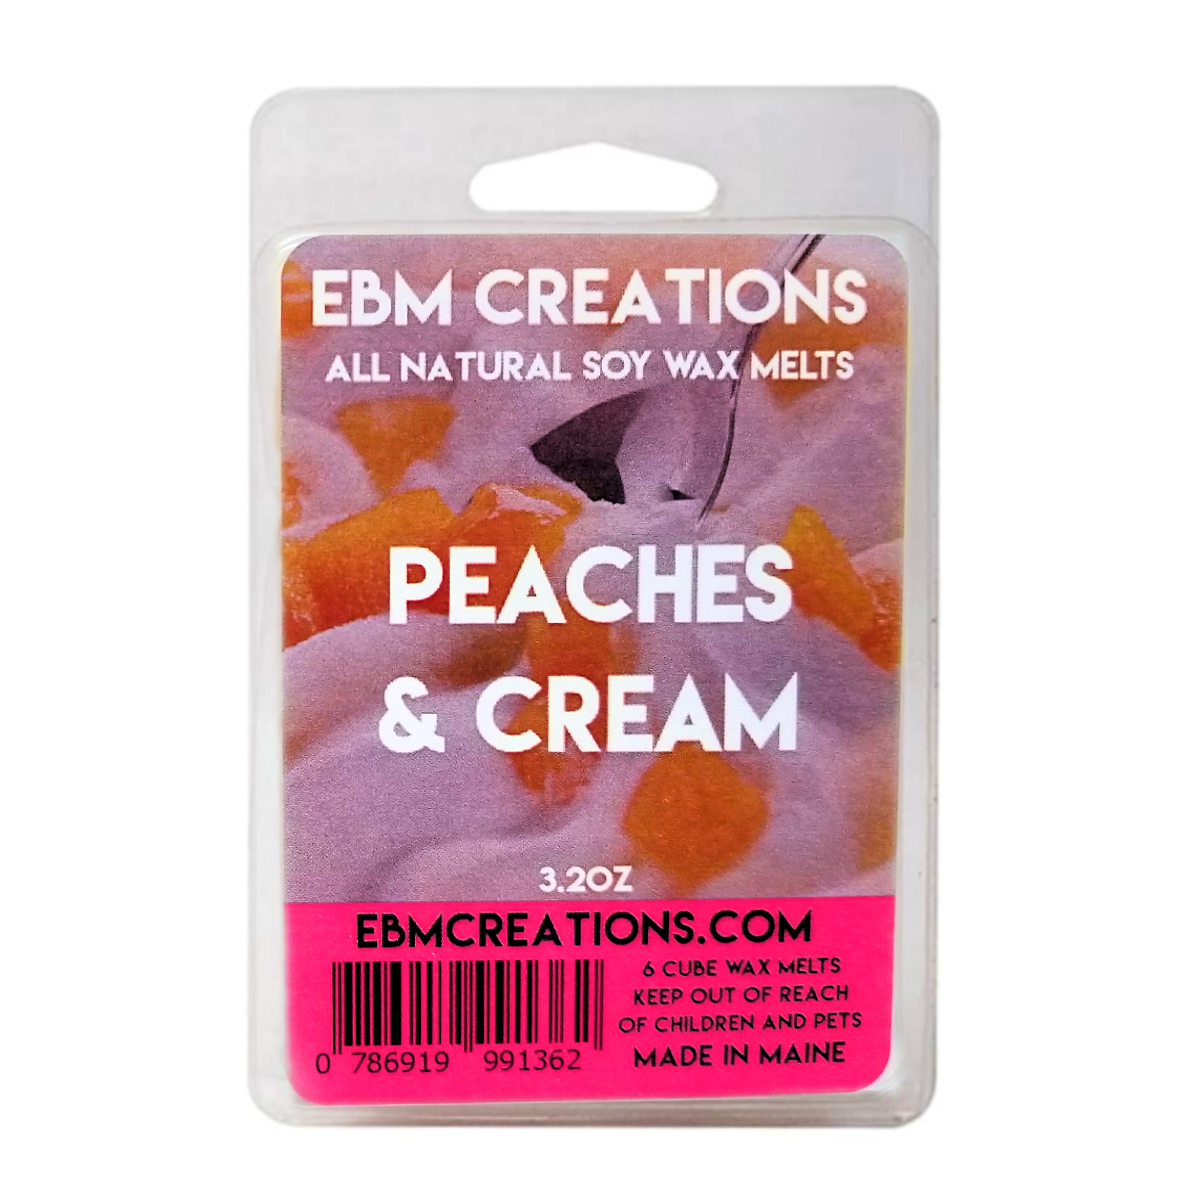 Peaches & Cream - 3.2 oz Clamshell